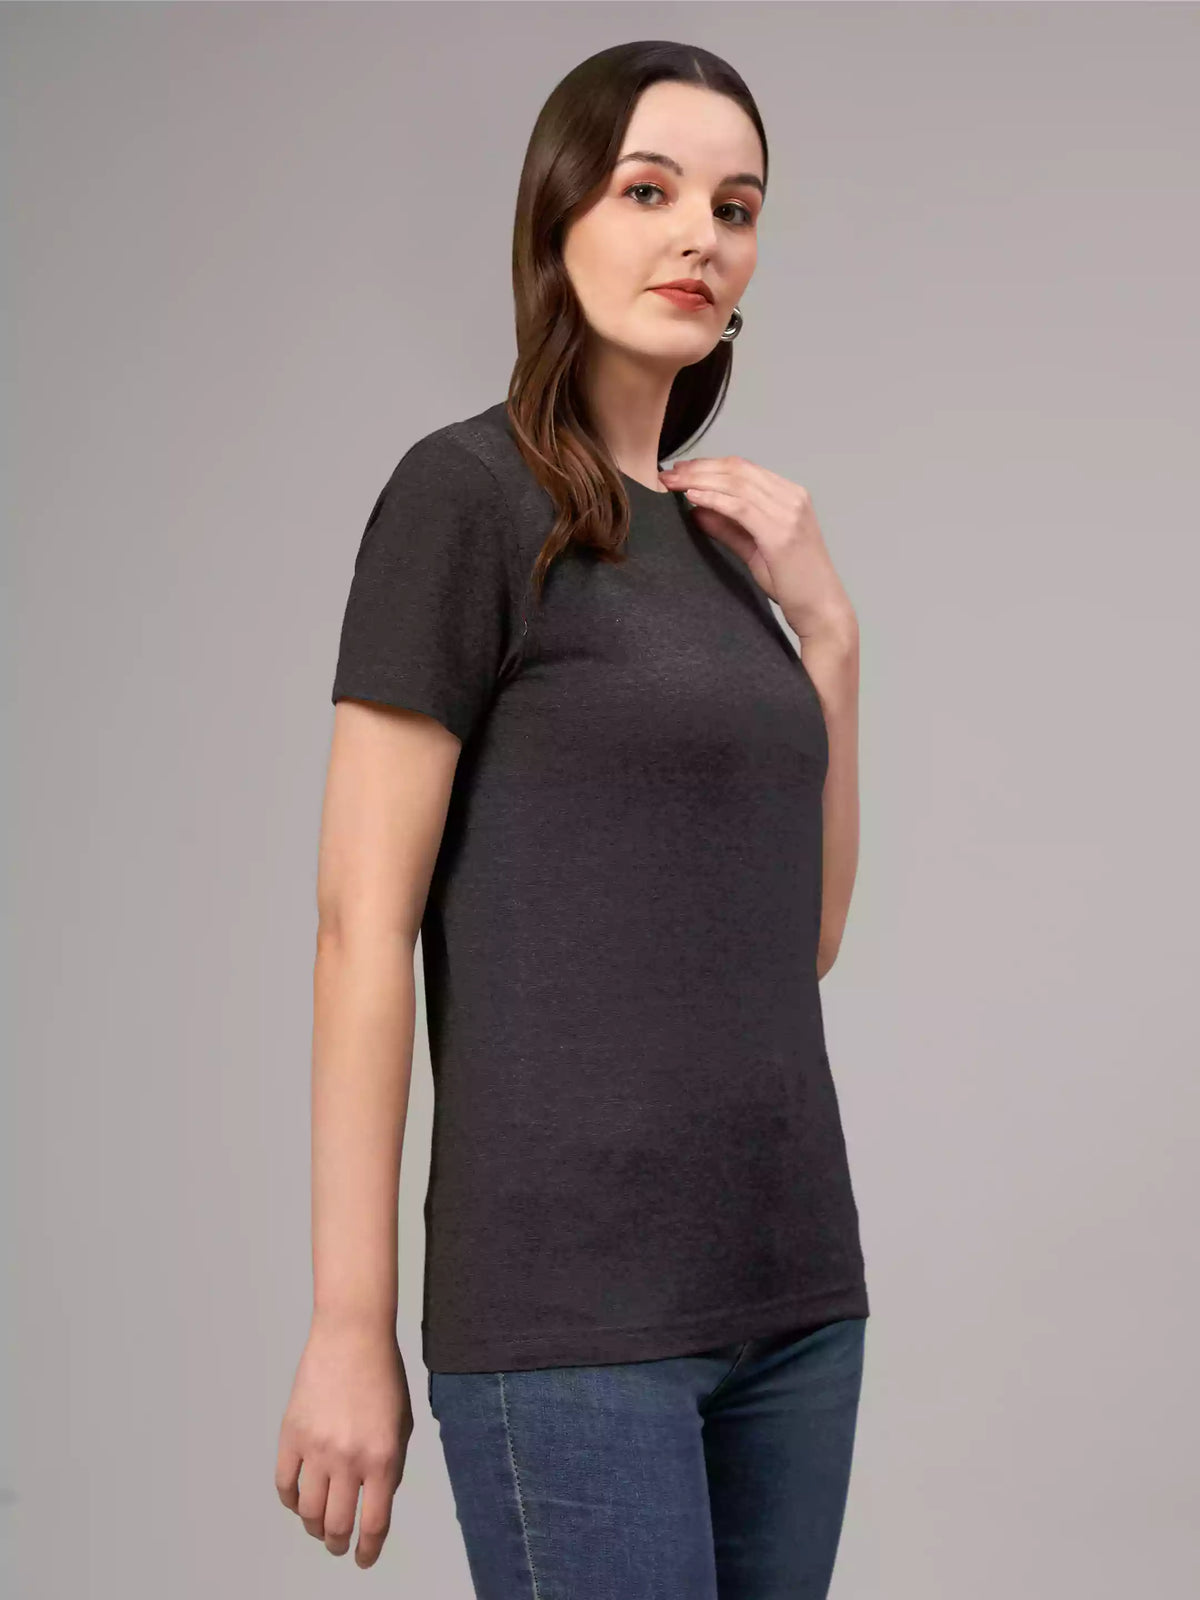 Charcoal Grey - Sukhiaatma Unisex Basic T-shirt